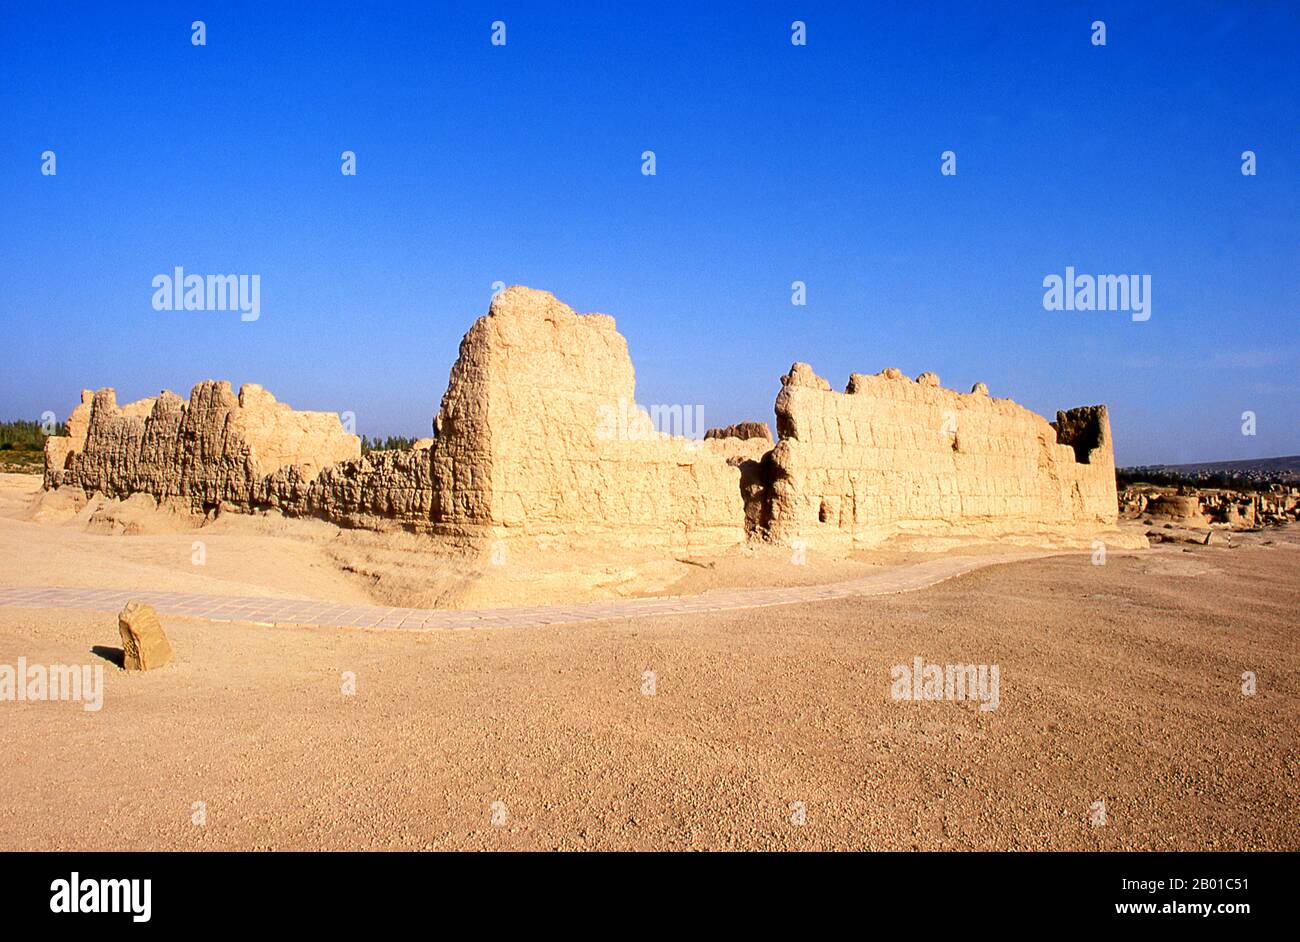 China: Ruinen in Yarkhoto oder Jiaohe Gucheng (antike Stadt Jiaohe), in der Nähe von Turpan, Xinjiang. Yarkhoto (Ruinen von Jiaohe) befindet sich im Yarnaz-Tal, 10 km westlich der Stadt Turpan. Yarkhoto wurde von den Chinesen nach der Han-Eroberung des Gebiets im 2.. Jahrhundert v. Chr. als Verwaltungszentrum und Garnisonsstadt entwickelt. Die Stadt blühte unter der Tang Dynastie (618-907), ging aber später in den Niedergang und wurde schließlich Anfang des 14.. Jahrhunderts aufgegeben. Stockfoto